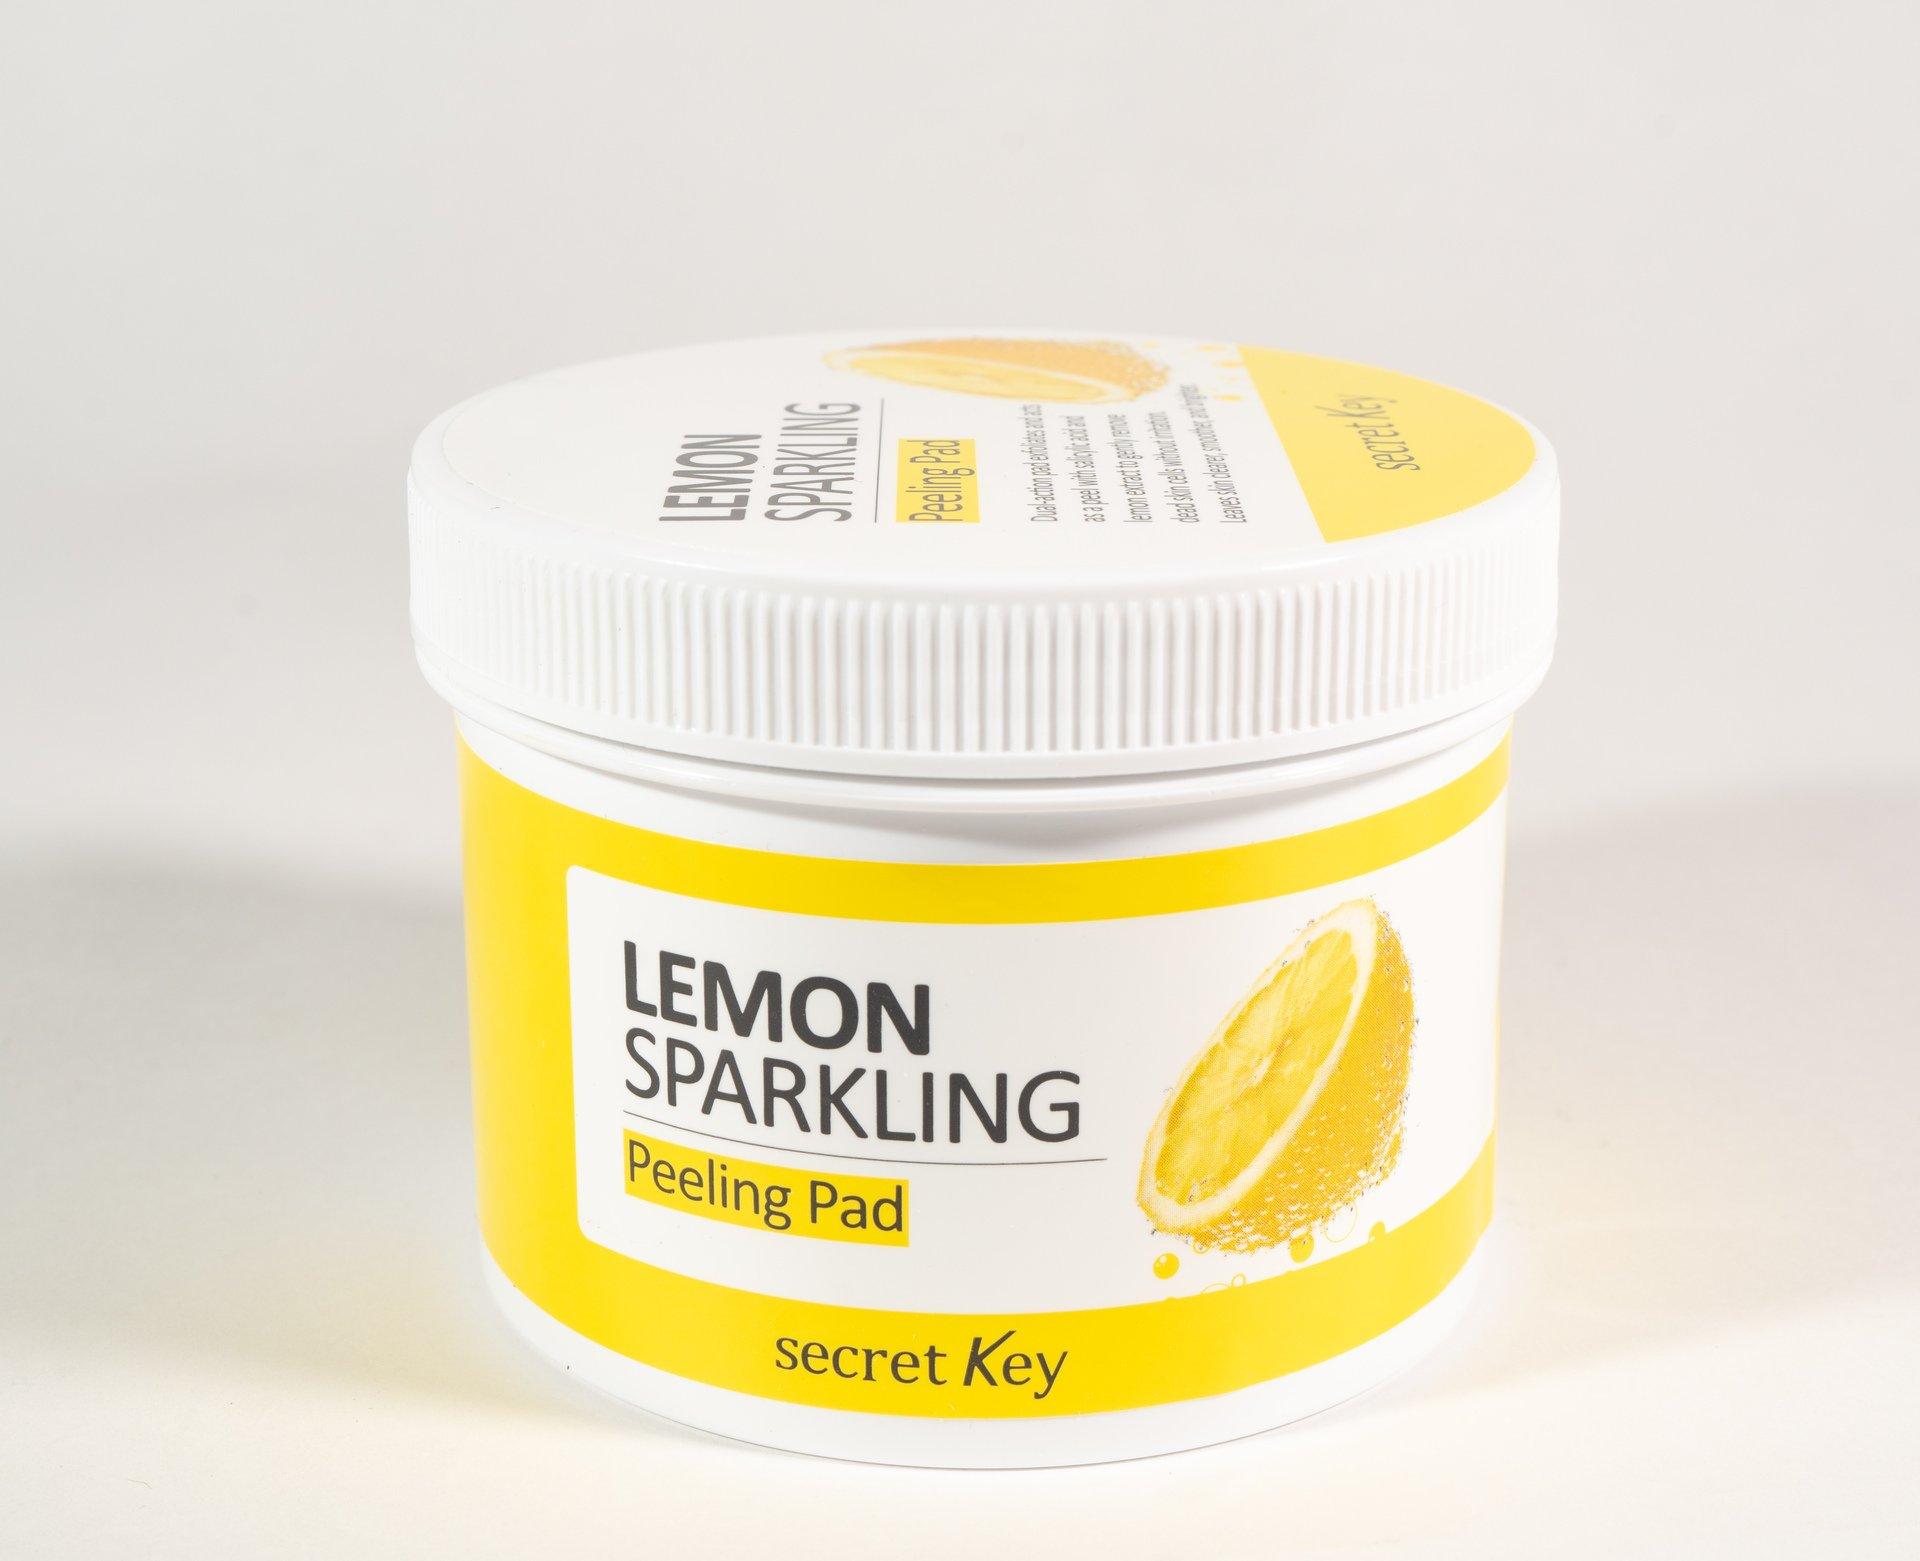 SECRETKEY Lemon Sparkling Peeling Pad 70pcs